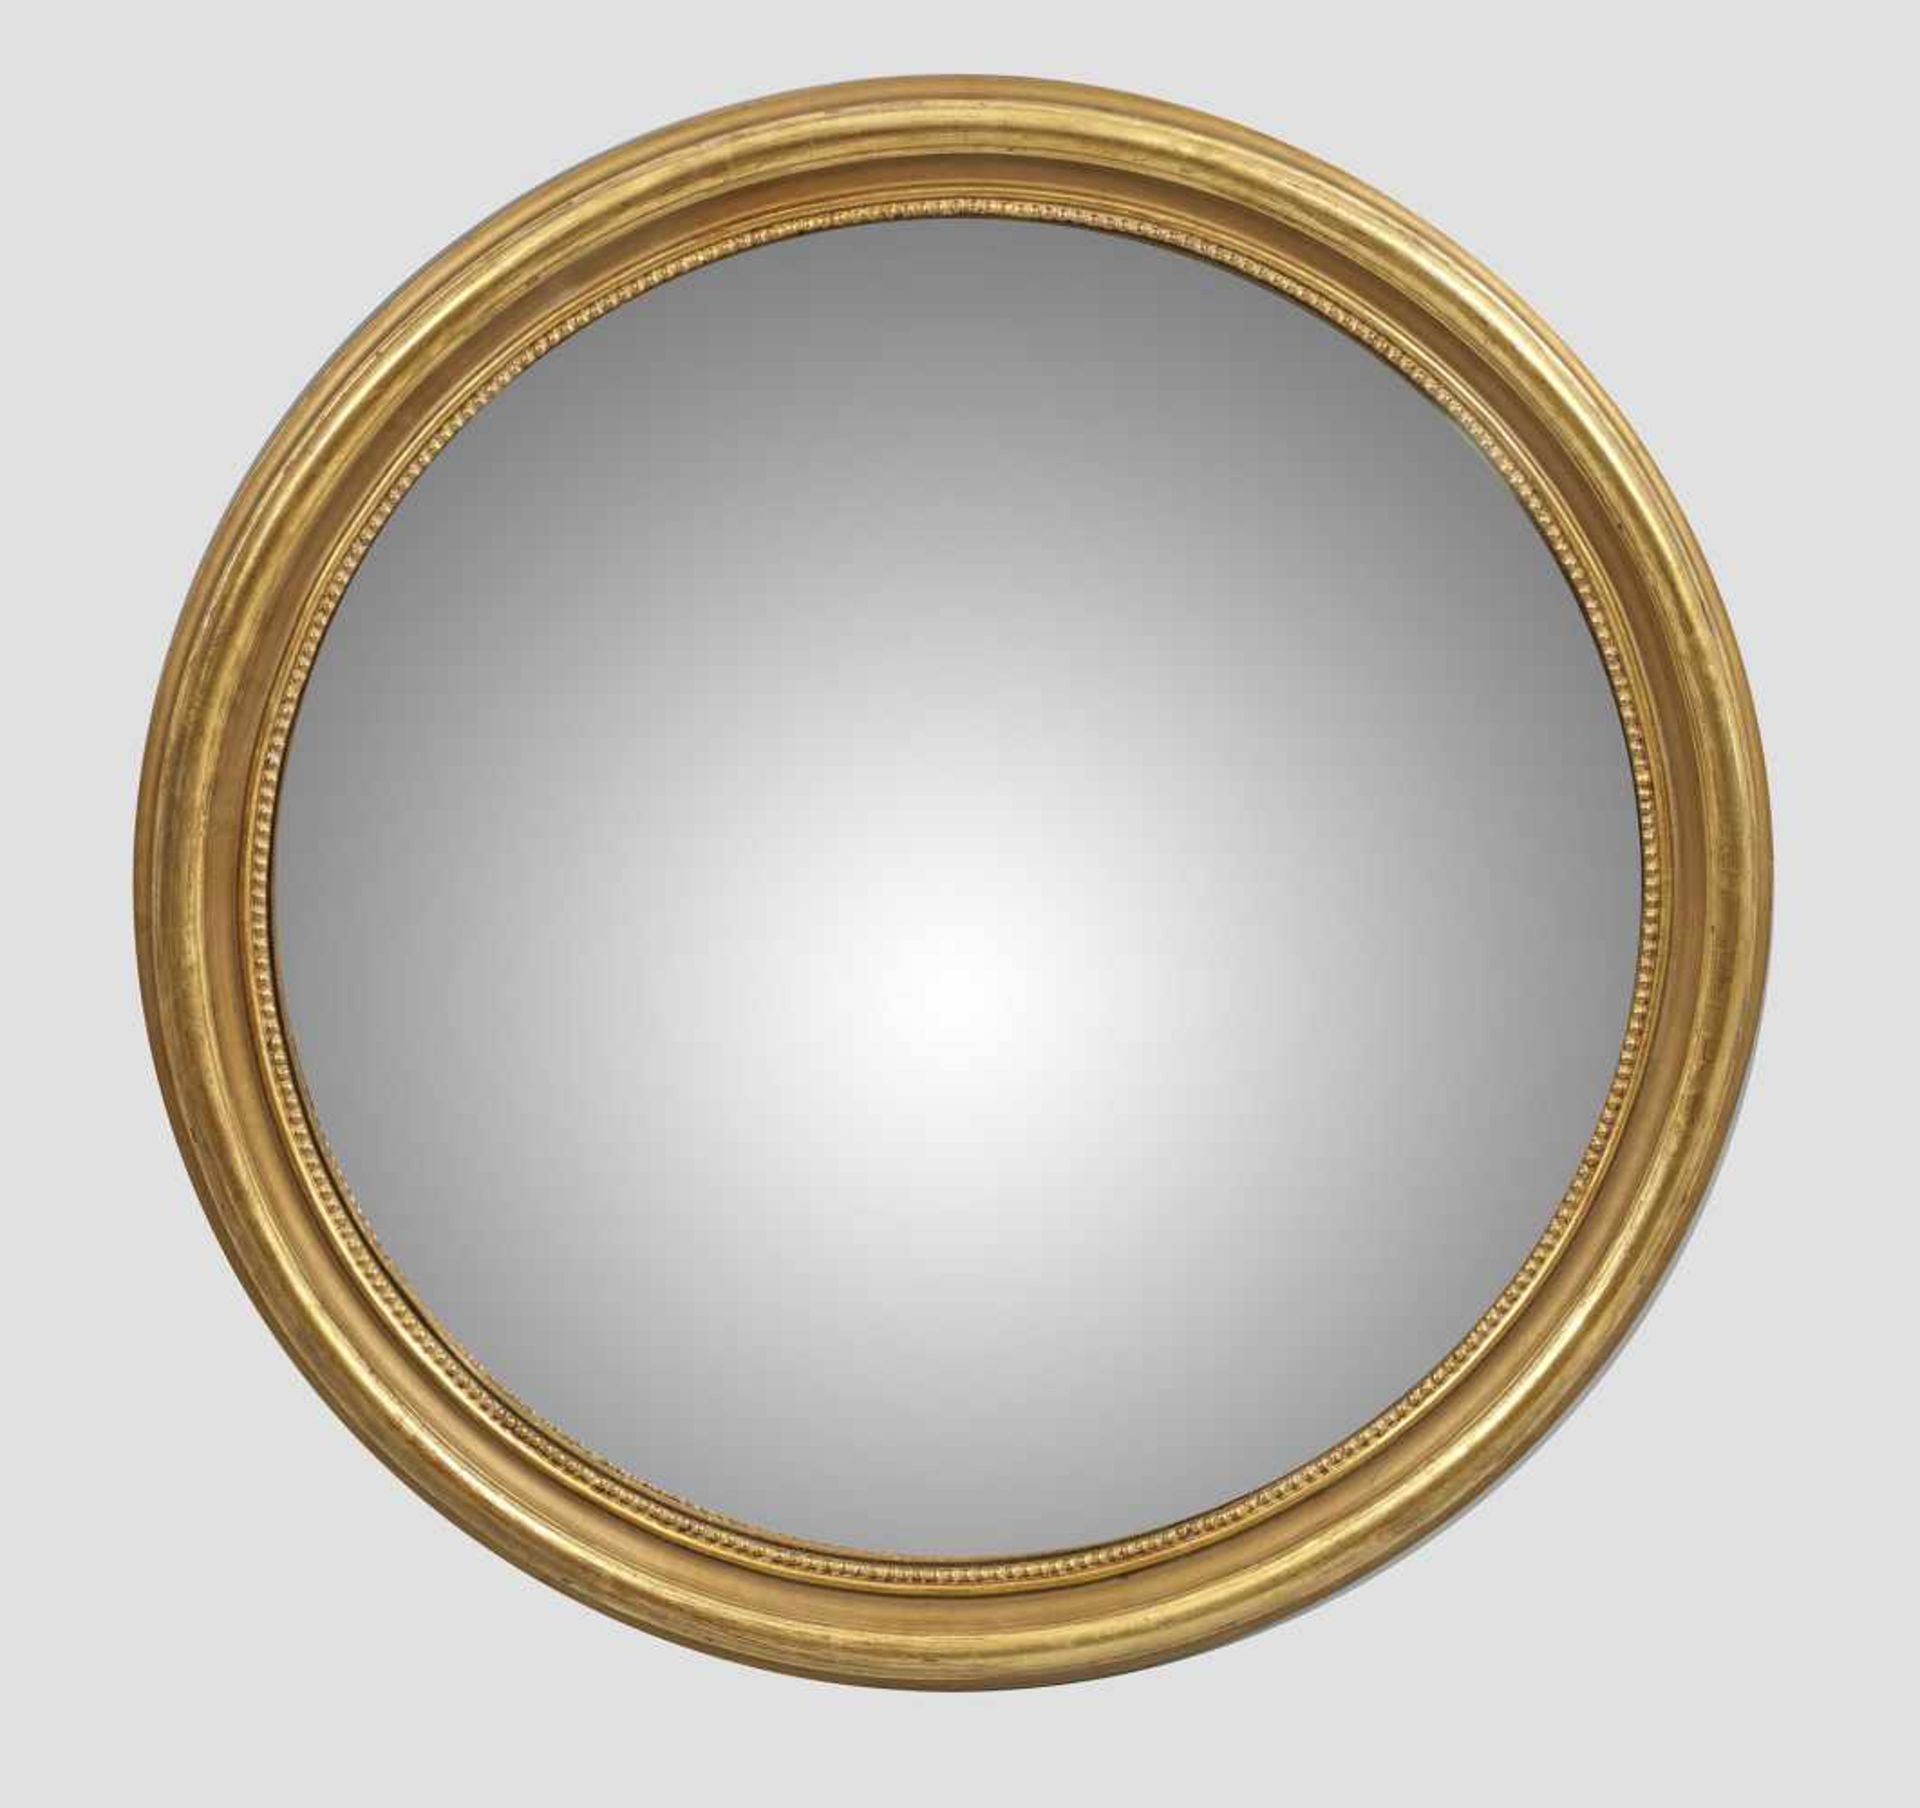 Großer KonvexspiegelHolz, vergoldet. Runde, umlaufend profilierte Spiegelrahmung mit